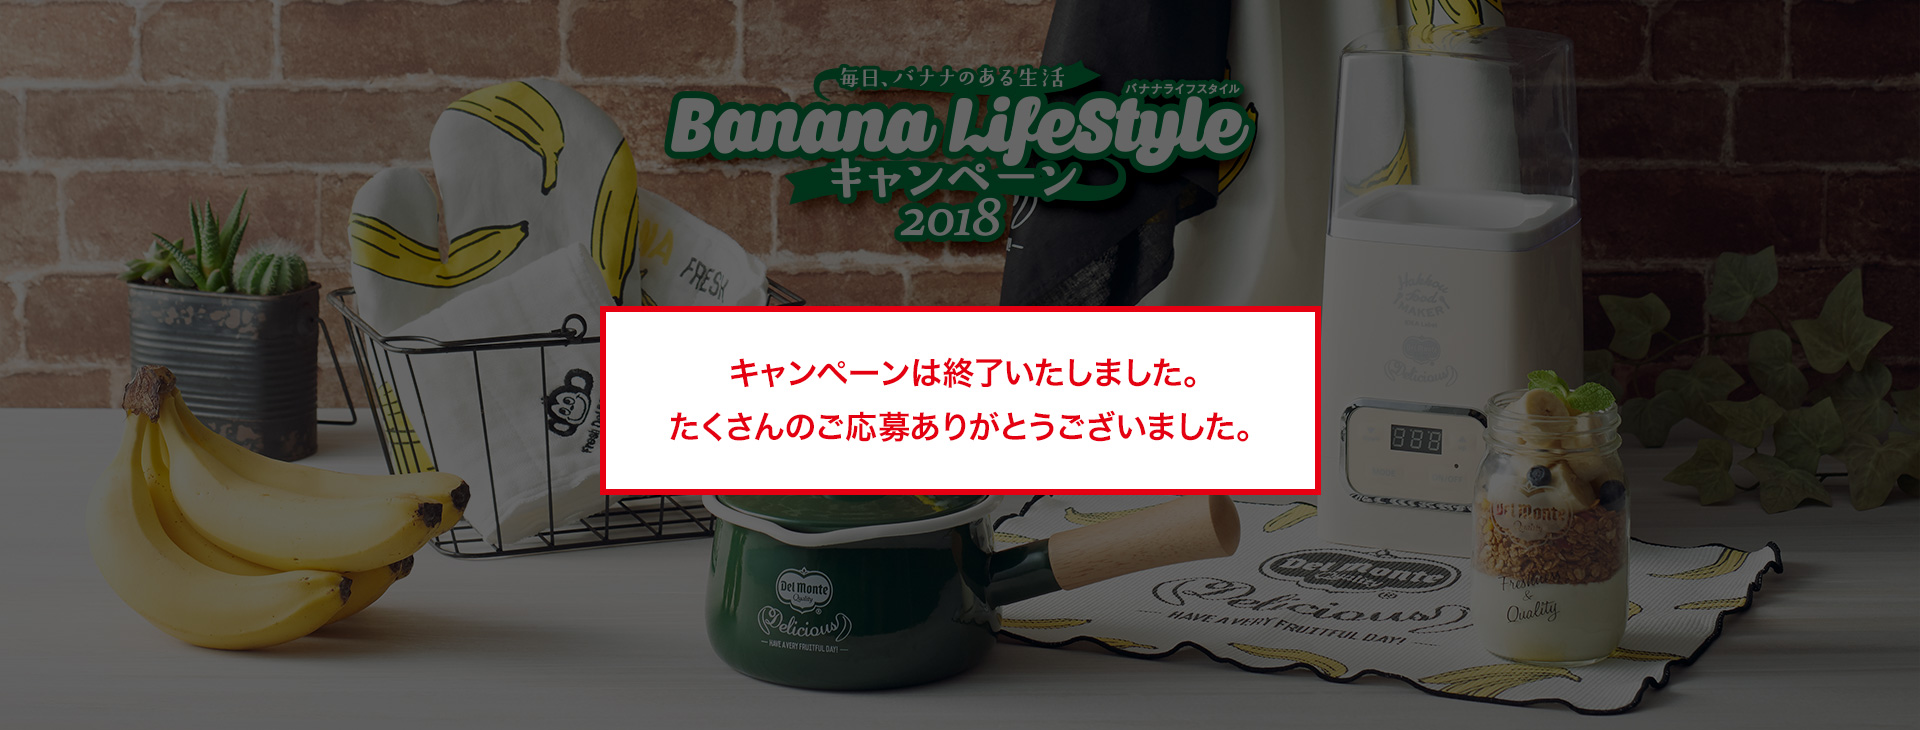 毎日、バナナあのある生活 バナナライフスタイル キャンペーン2018